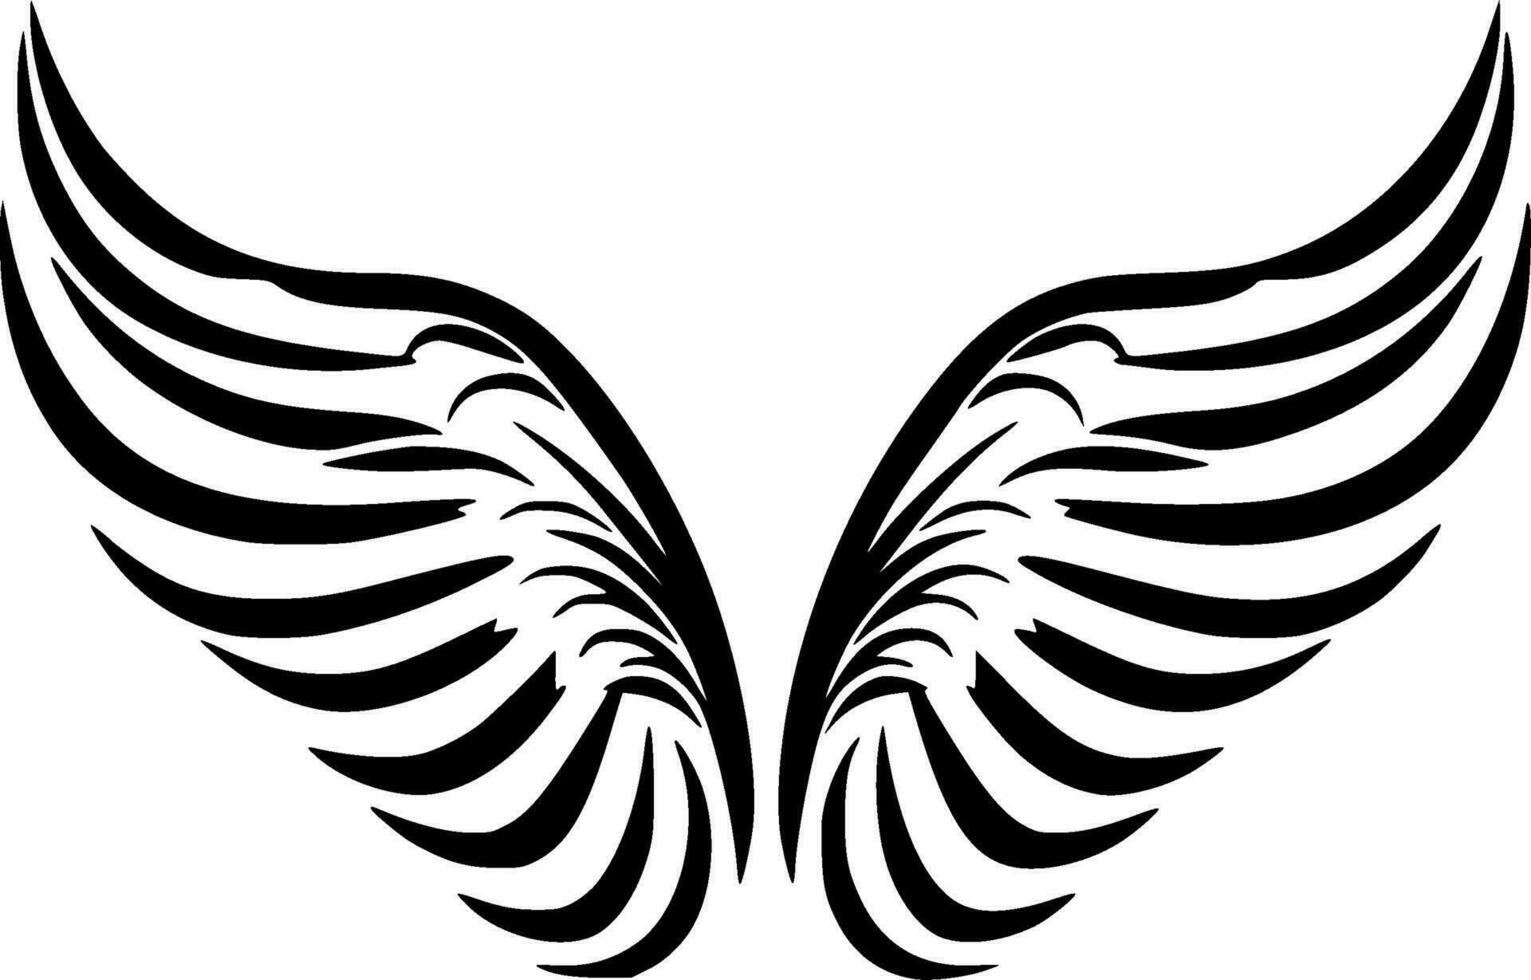 Flügel - - hoch Qualität Vektor Logo - - Vektor Illustration Ideal zum T-Shirt Grafik